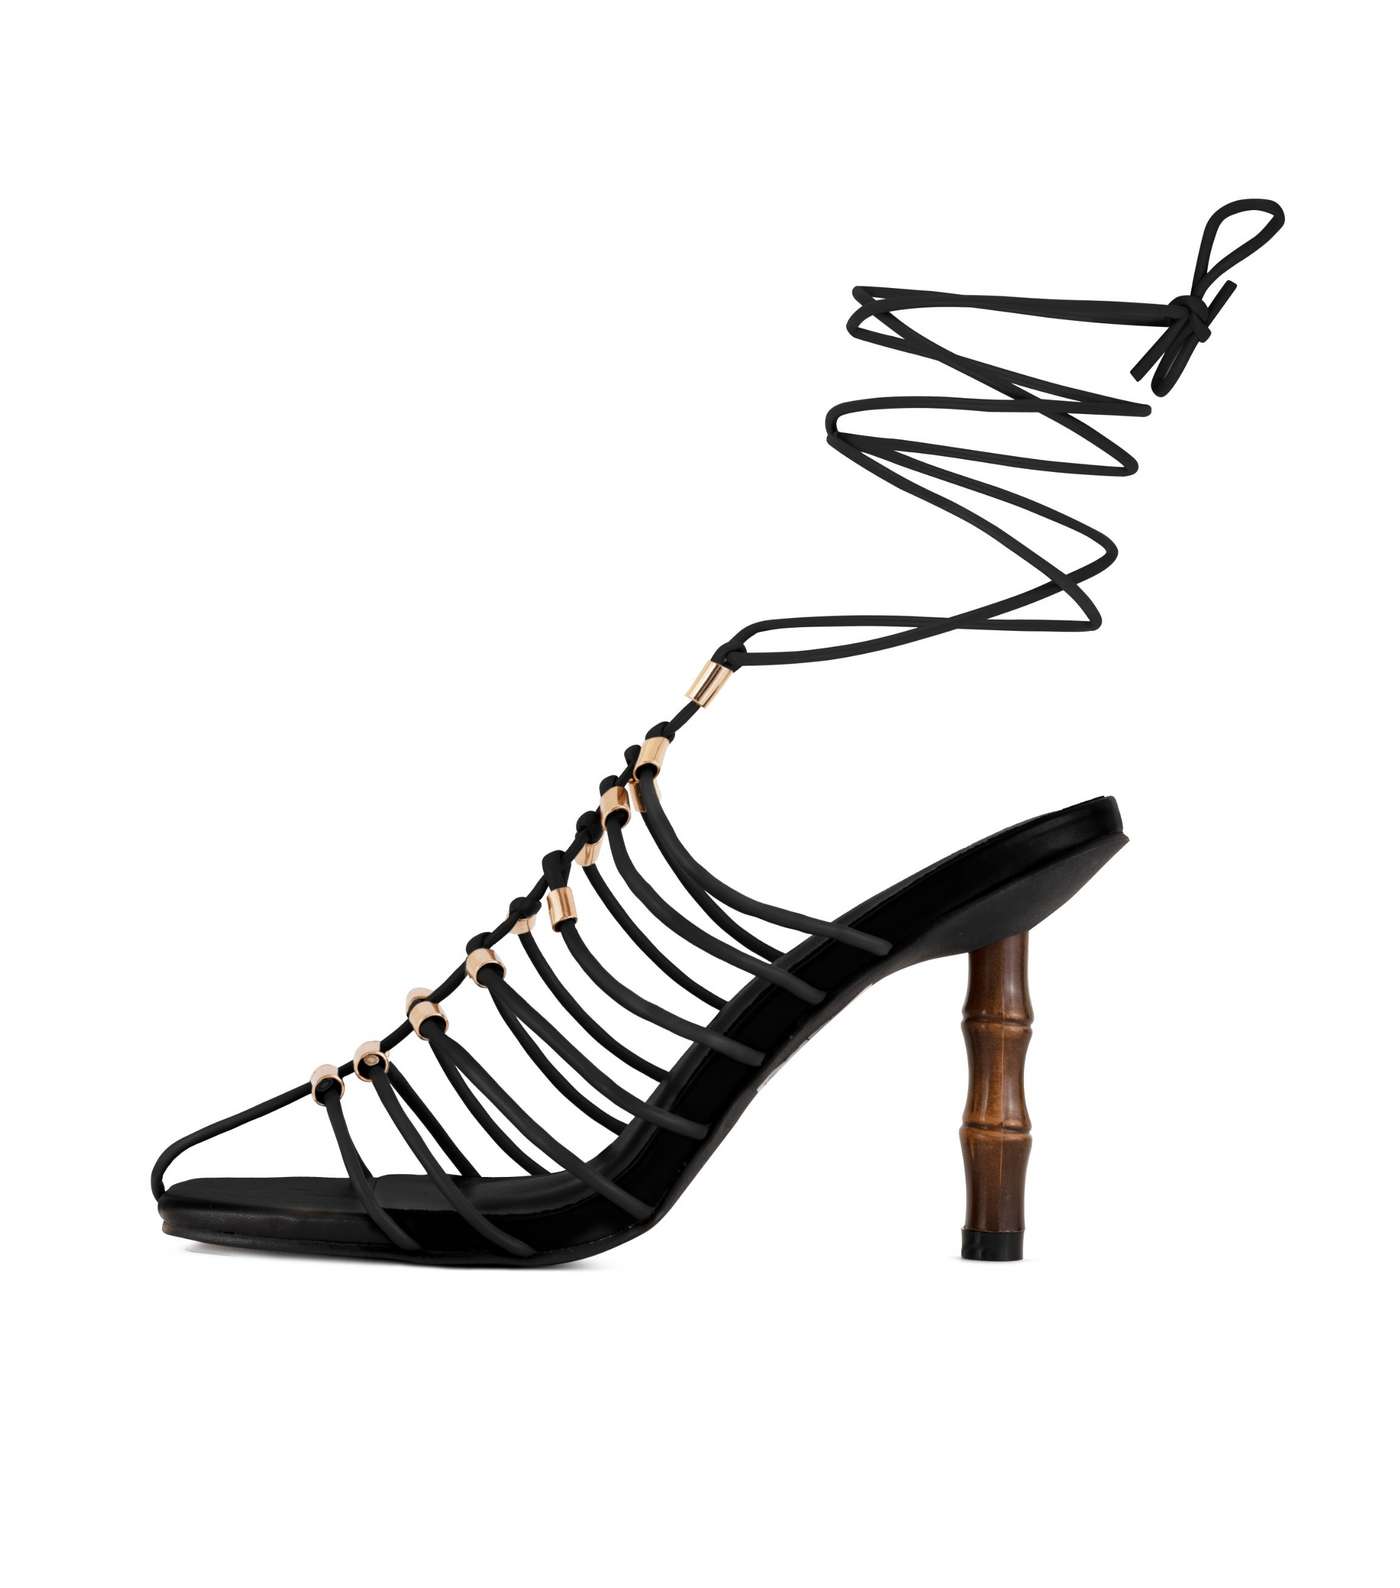 South Beach Black Tie Stiletto Heel Sandals Image 2